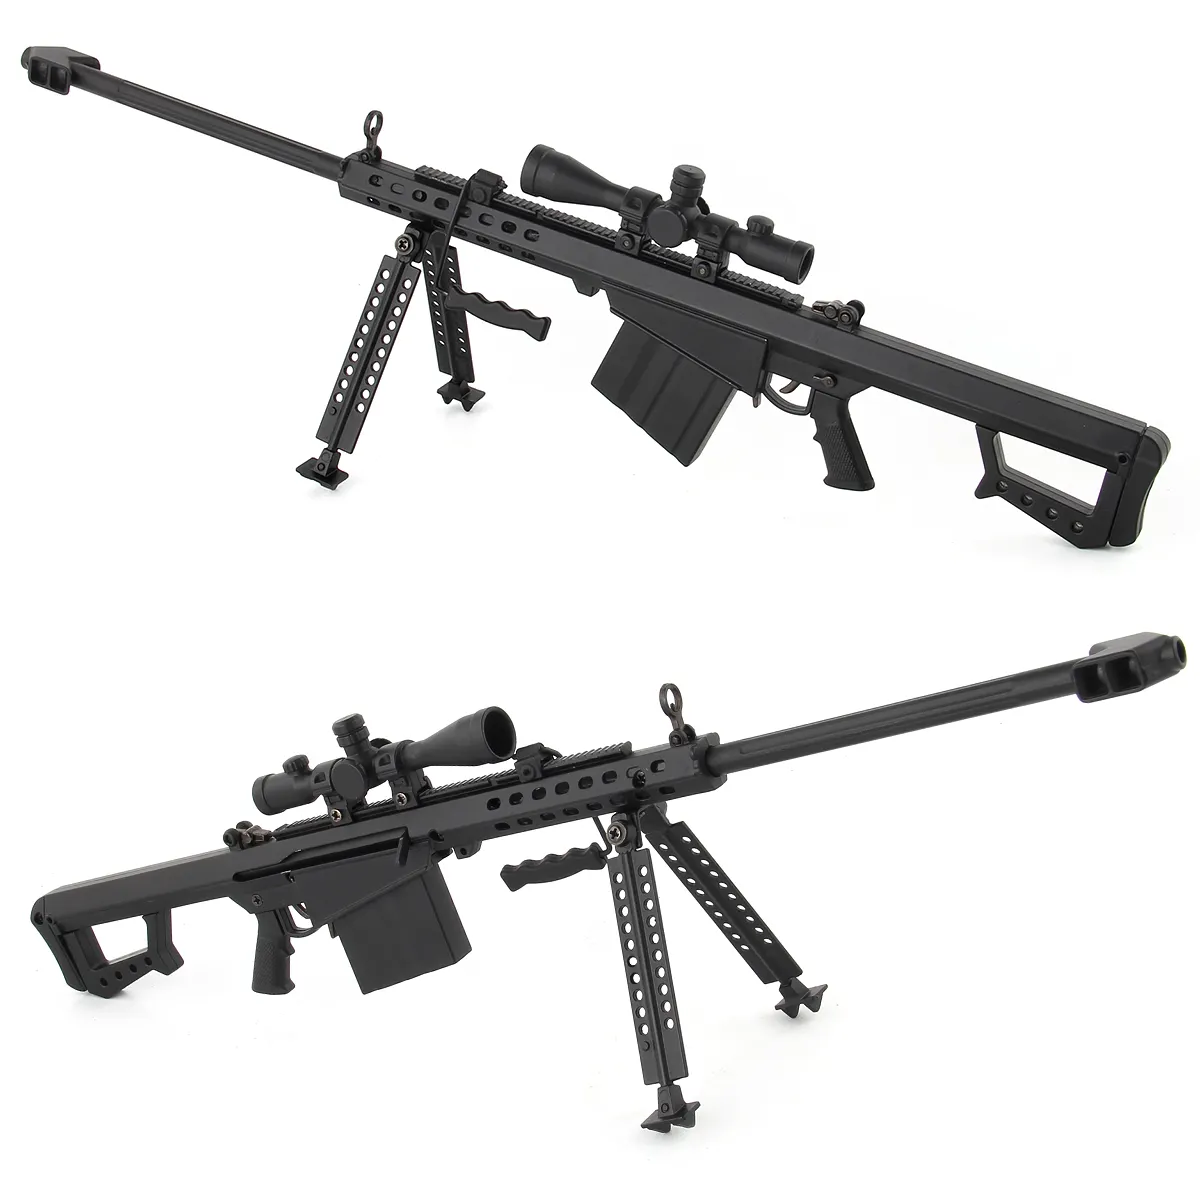 Mini Metall waffen Pistole Modell Legierung Pistole Spielzeug Barrett Scharfschützen gewehr AK47 Spielzeug pistole